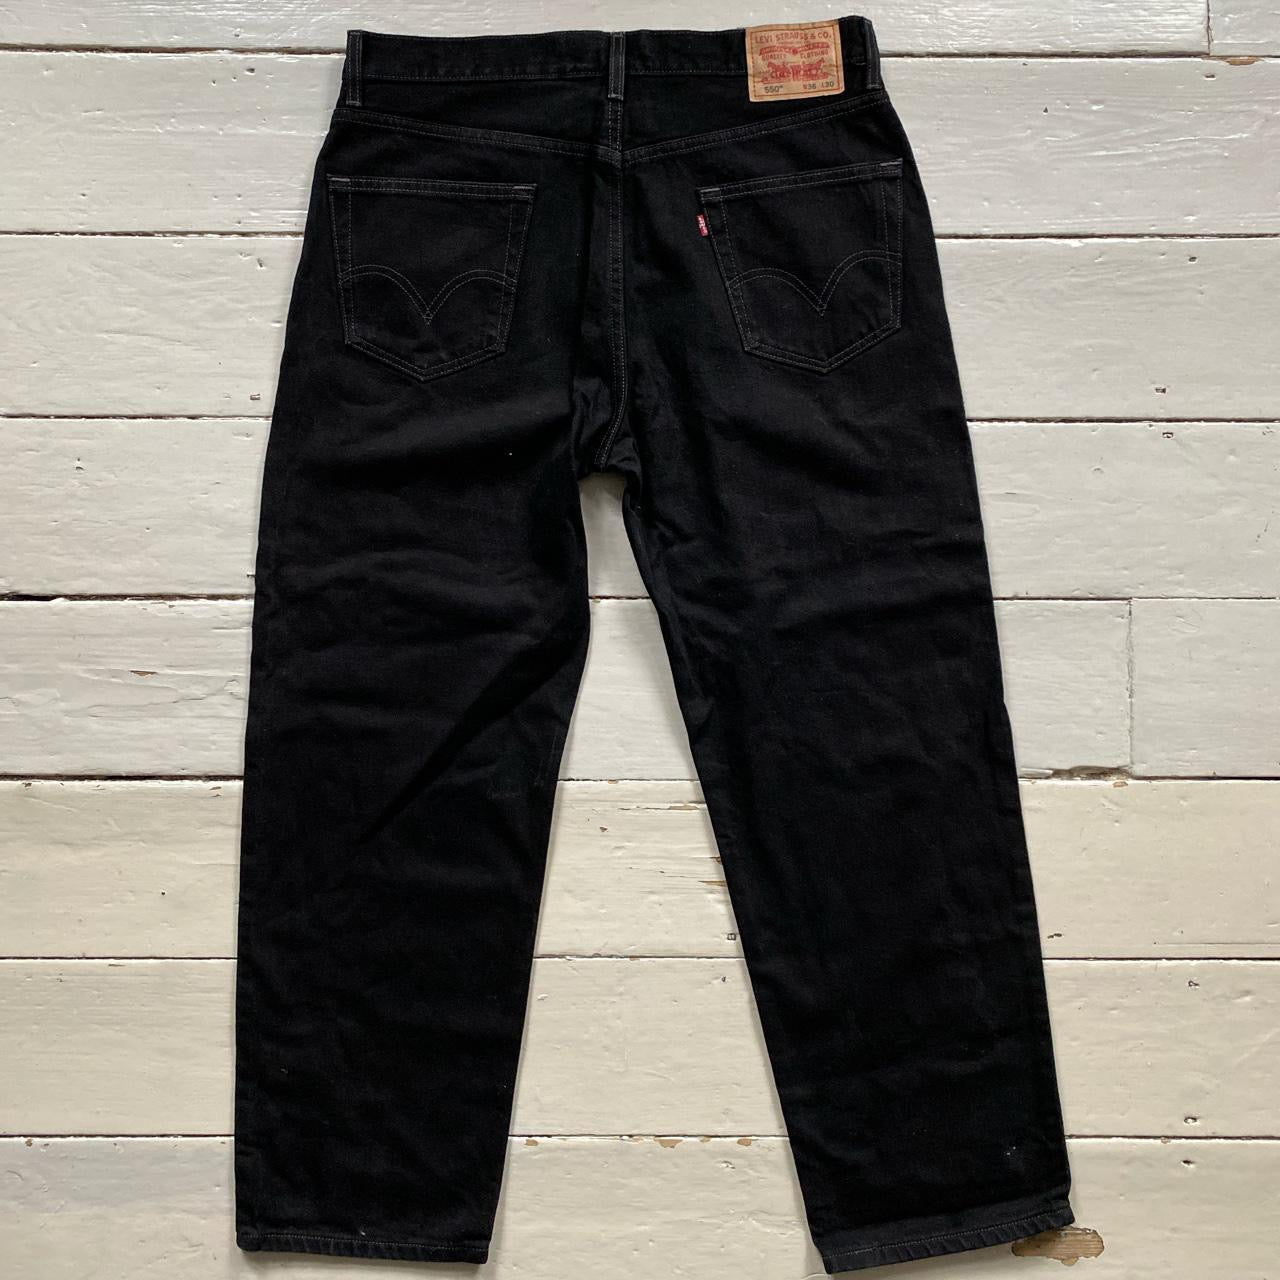 Levis 550 Black Jeans (36/30)